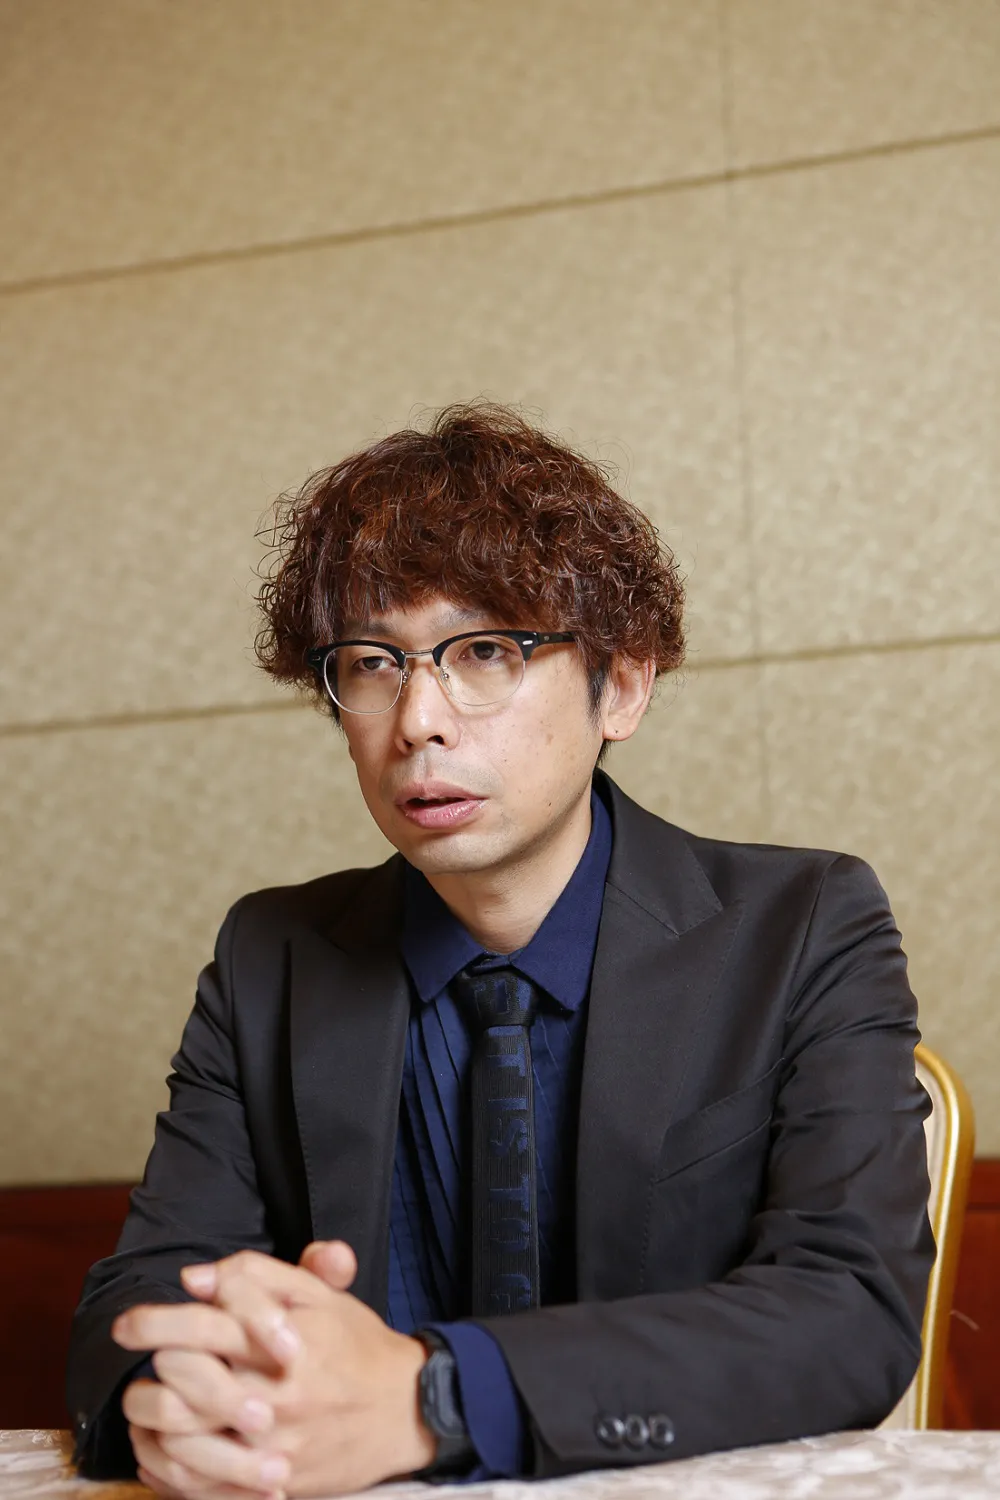 2001年「ココだけの話」(テレビ朝日系)でドラマ初演出。以降、多数のヒットドラマを手掛けてきた石川淳一氏